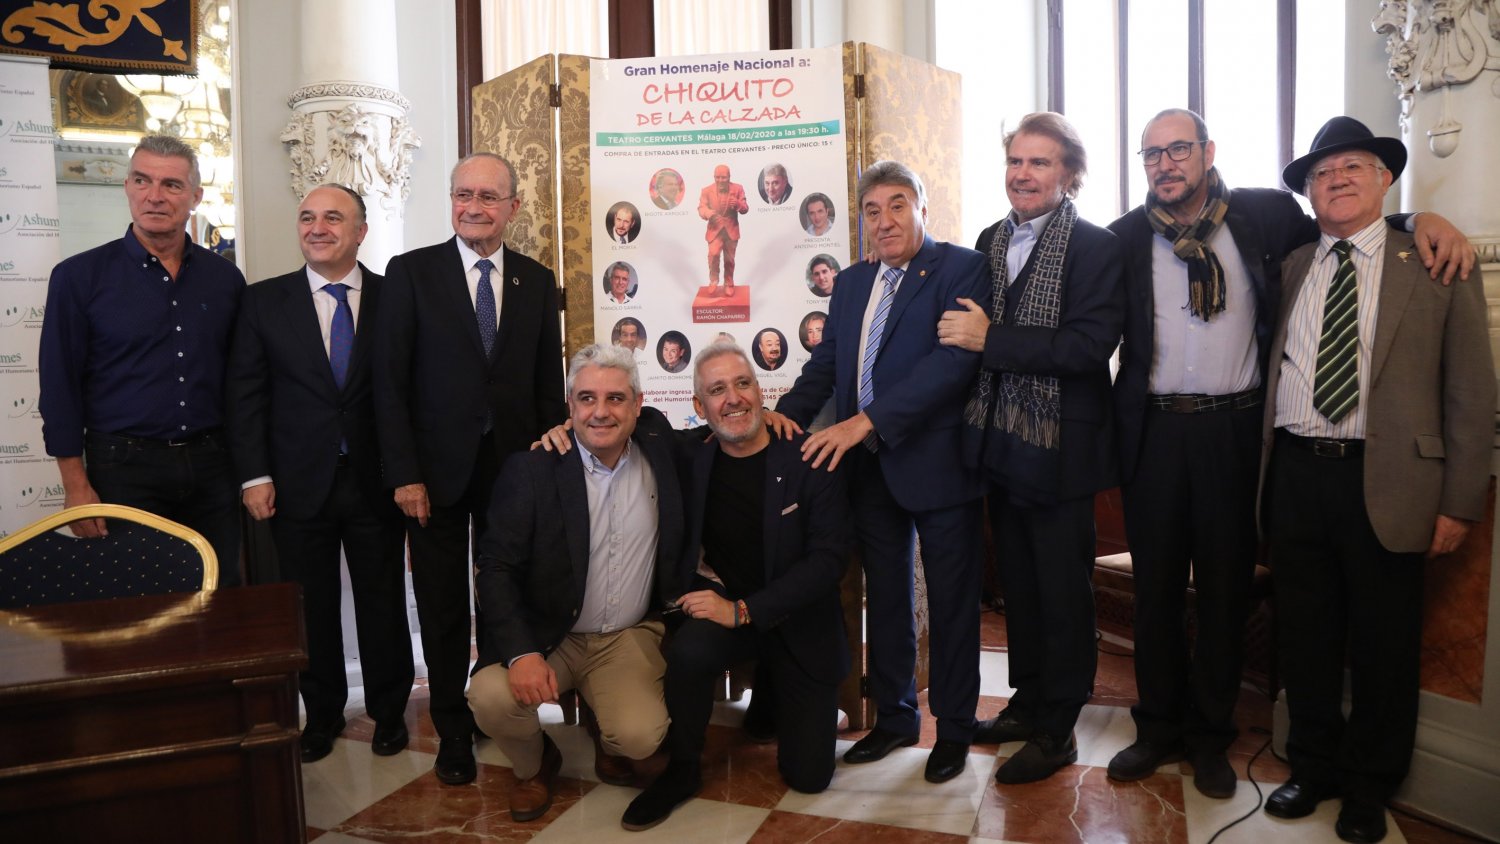 Málaga prepara una gala benéfica con humoristas para financiar la escultura de Chiquito de la Calzada